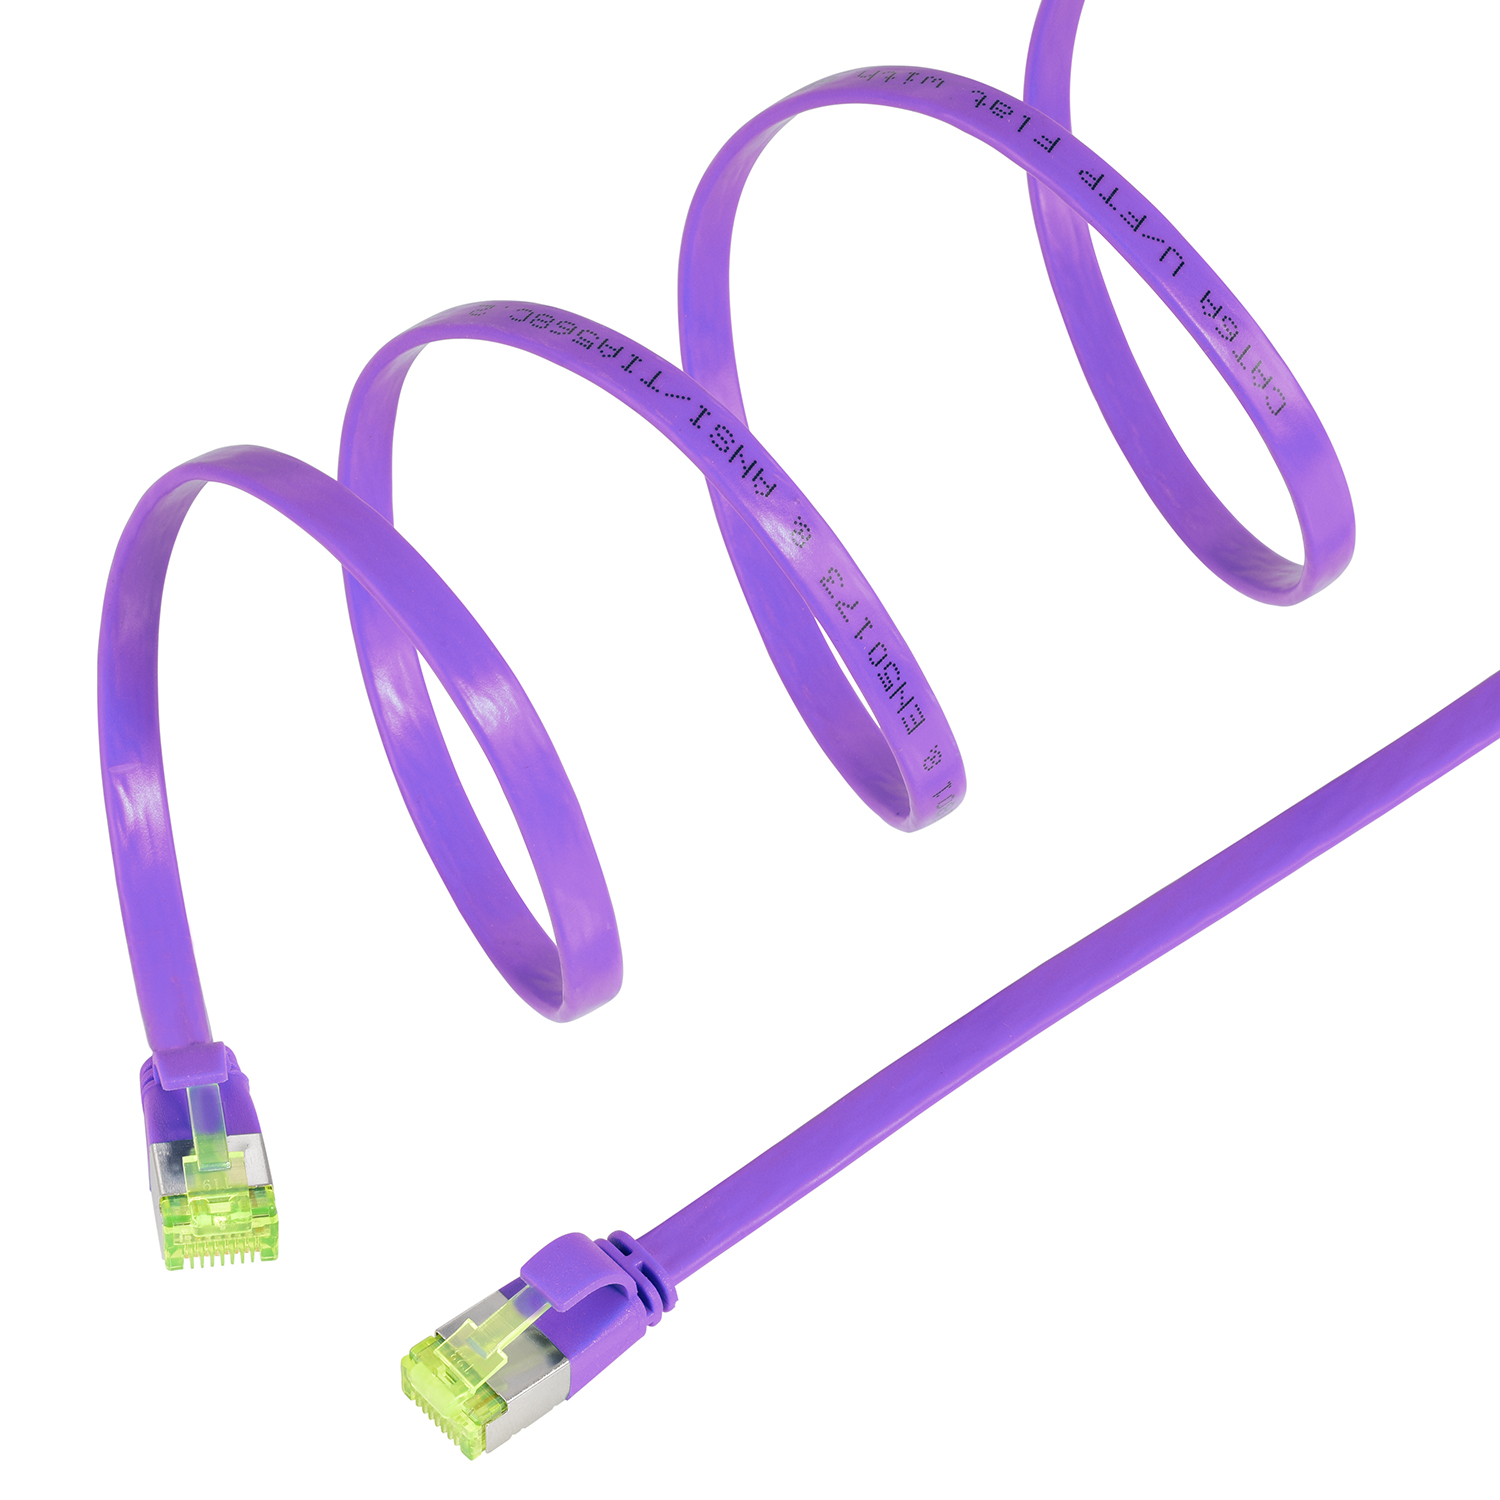 TPFNET 1,5m Patchkabel U/FTP 1,5 violett, / 10 GBit, m Netzwerkkabel, Flachkabel